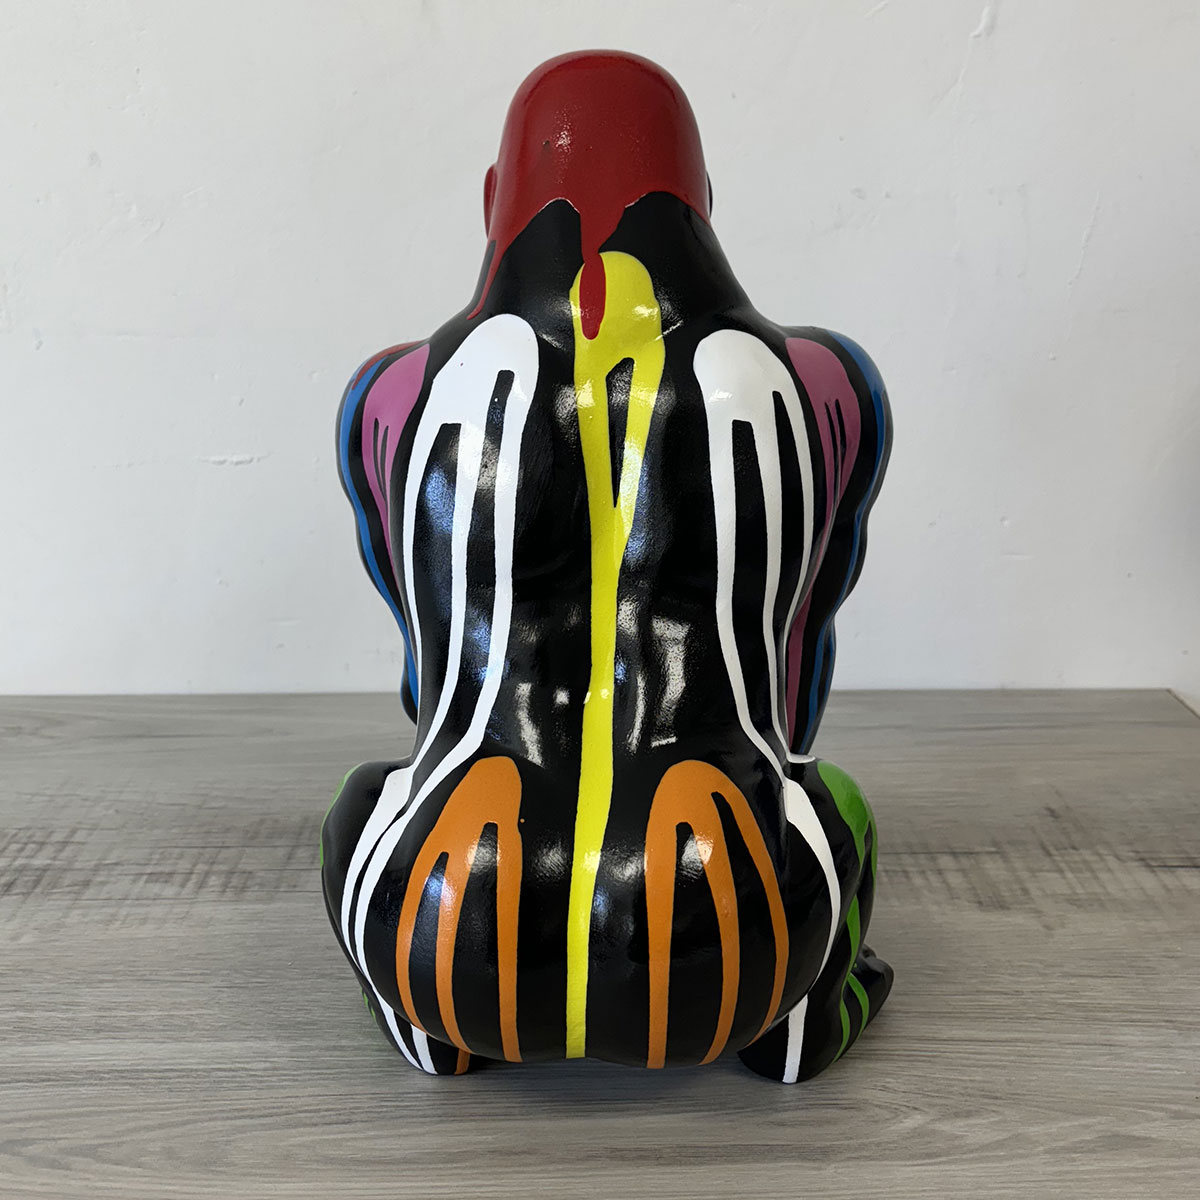 Statue en cramique gorille noir finition multicolore 37 cm